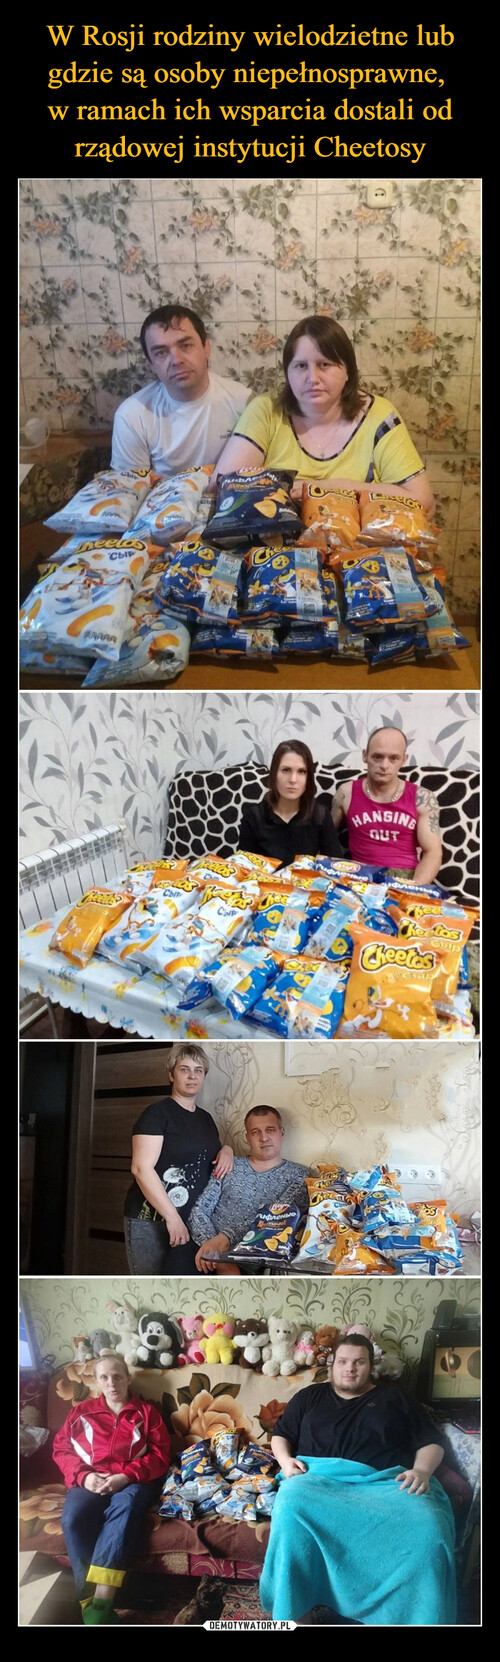 W Rosji rodziny wielodzietne lub gdzie są osoby niepełnosprawne, 
w ramach ich wsparcia dostali od rządowej instytucji Cheetosy